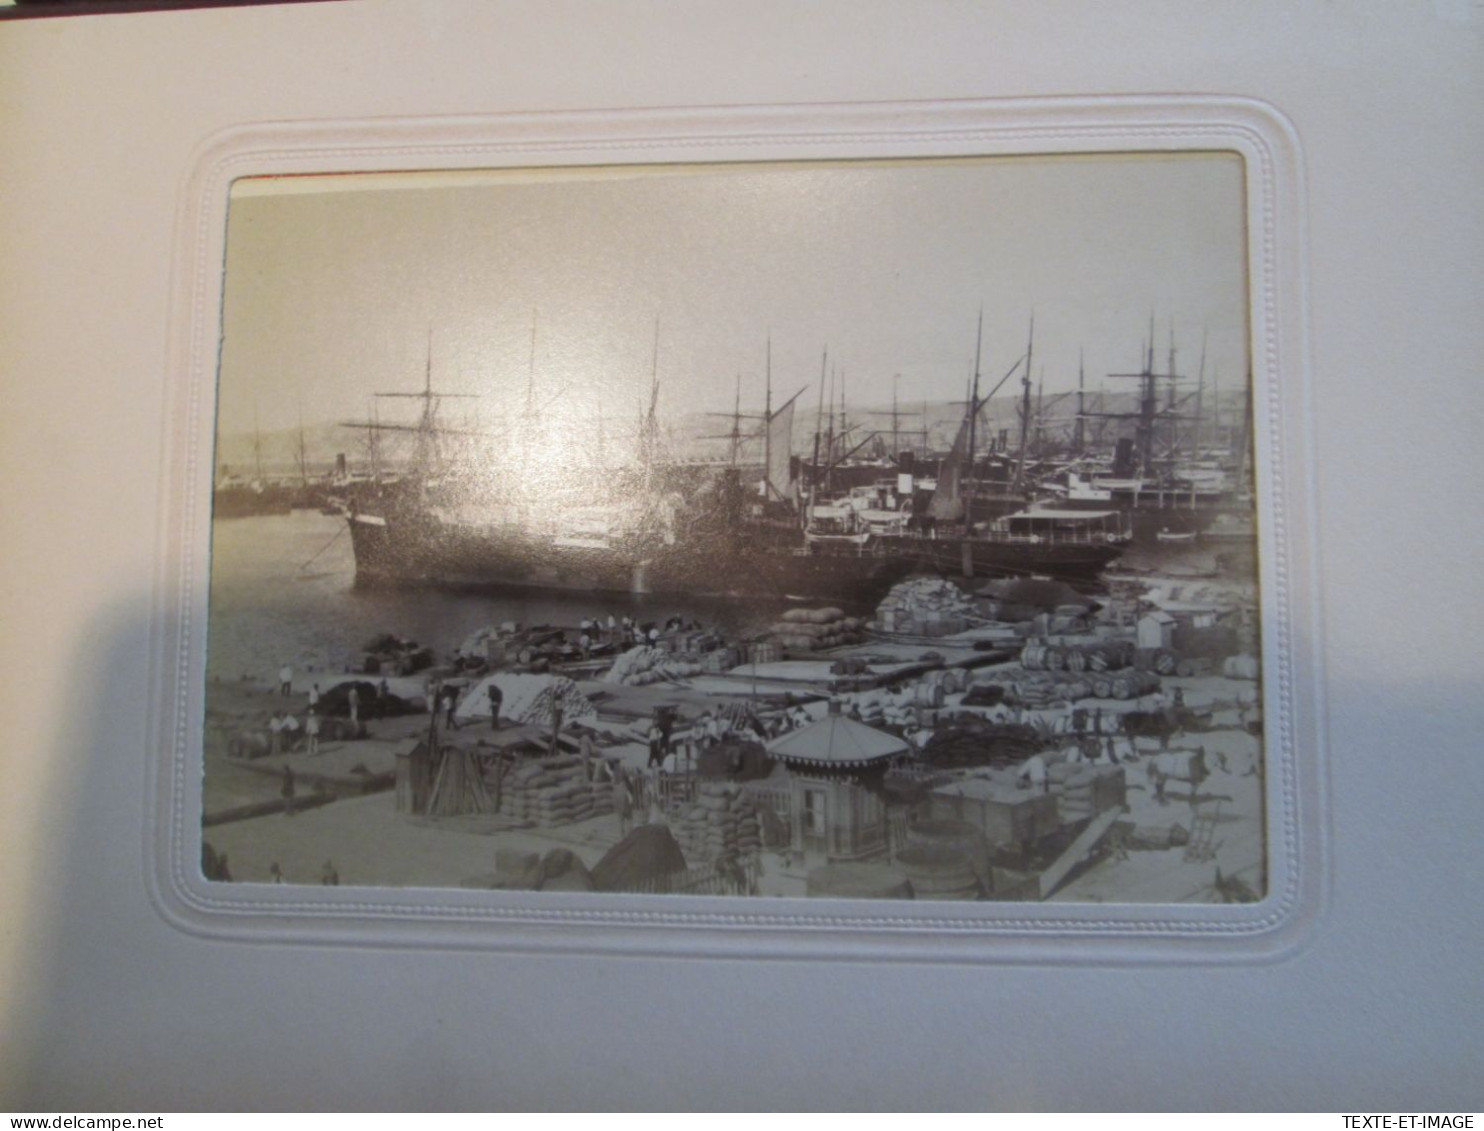 Album photo in-4 de 36 photographies [circa 1870-1880] 16X10cm